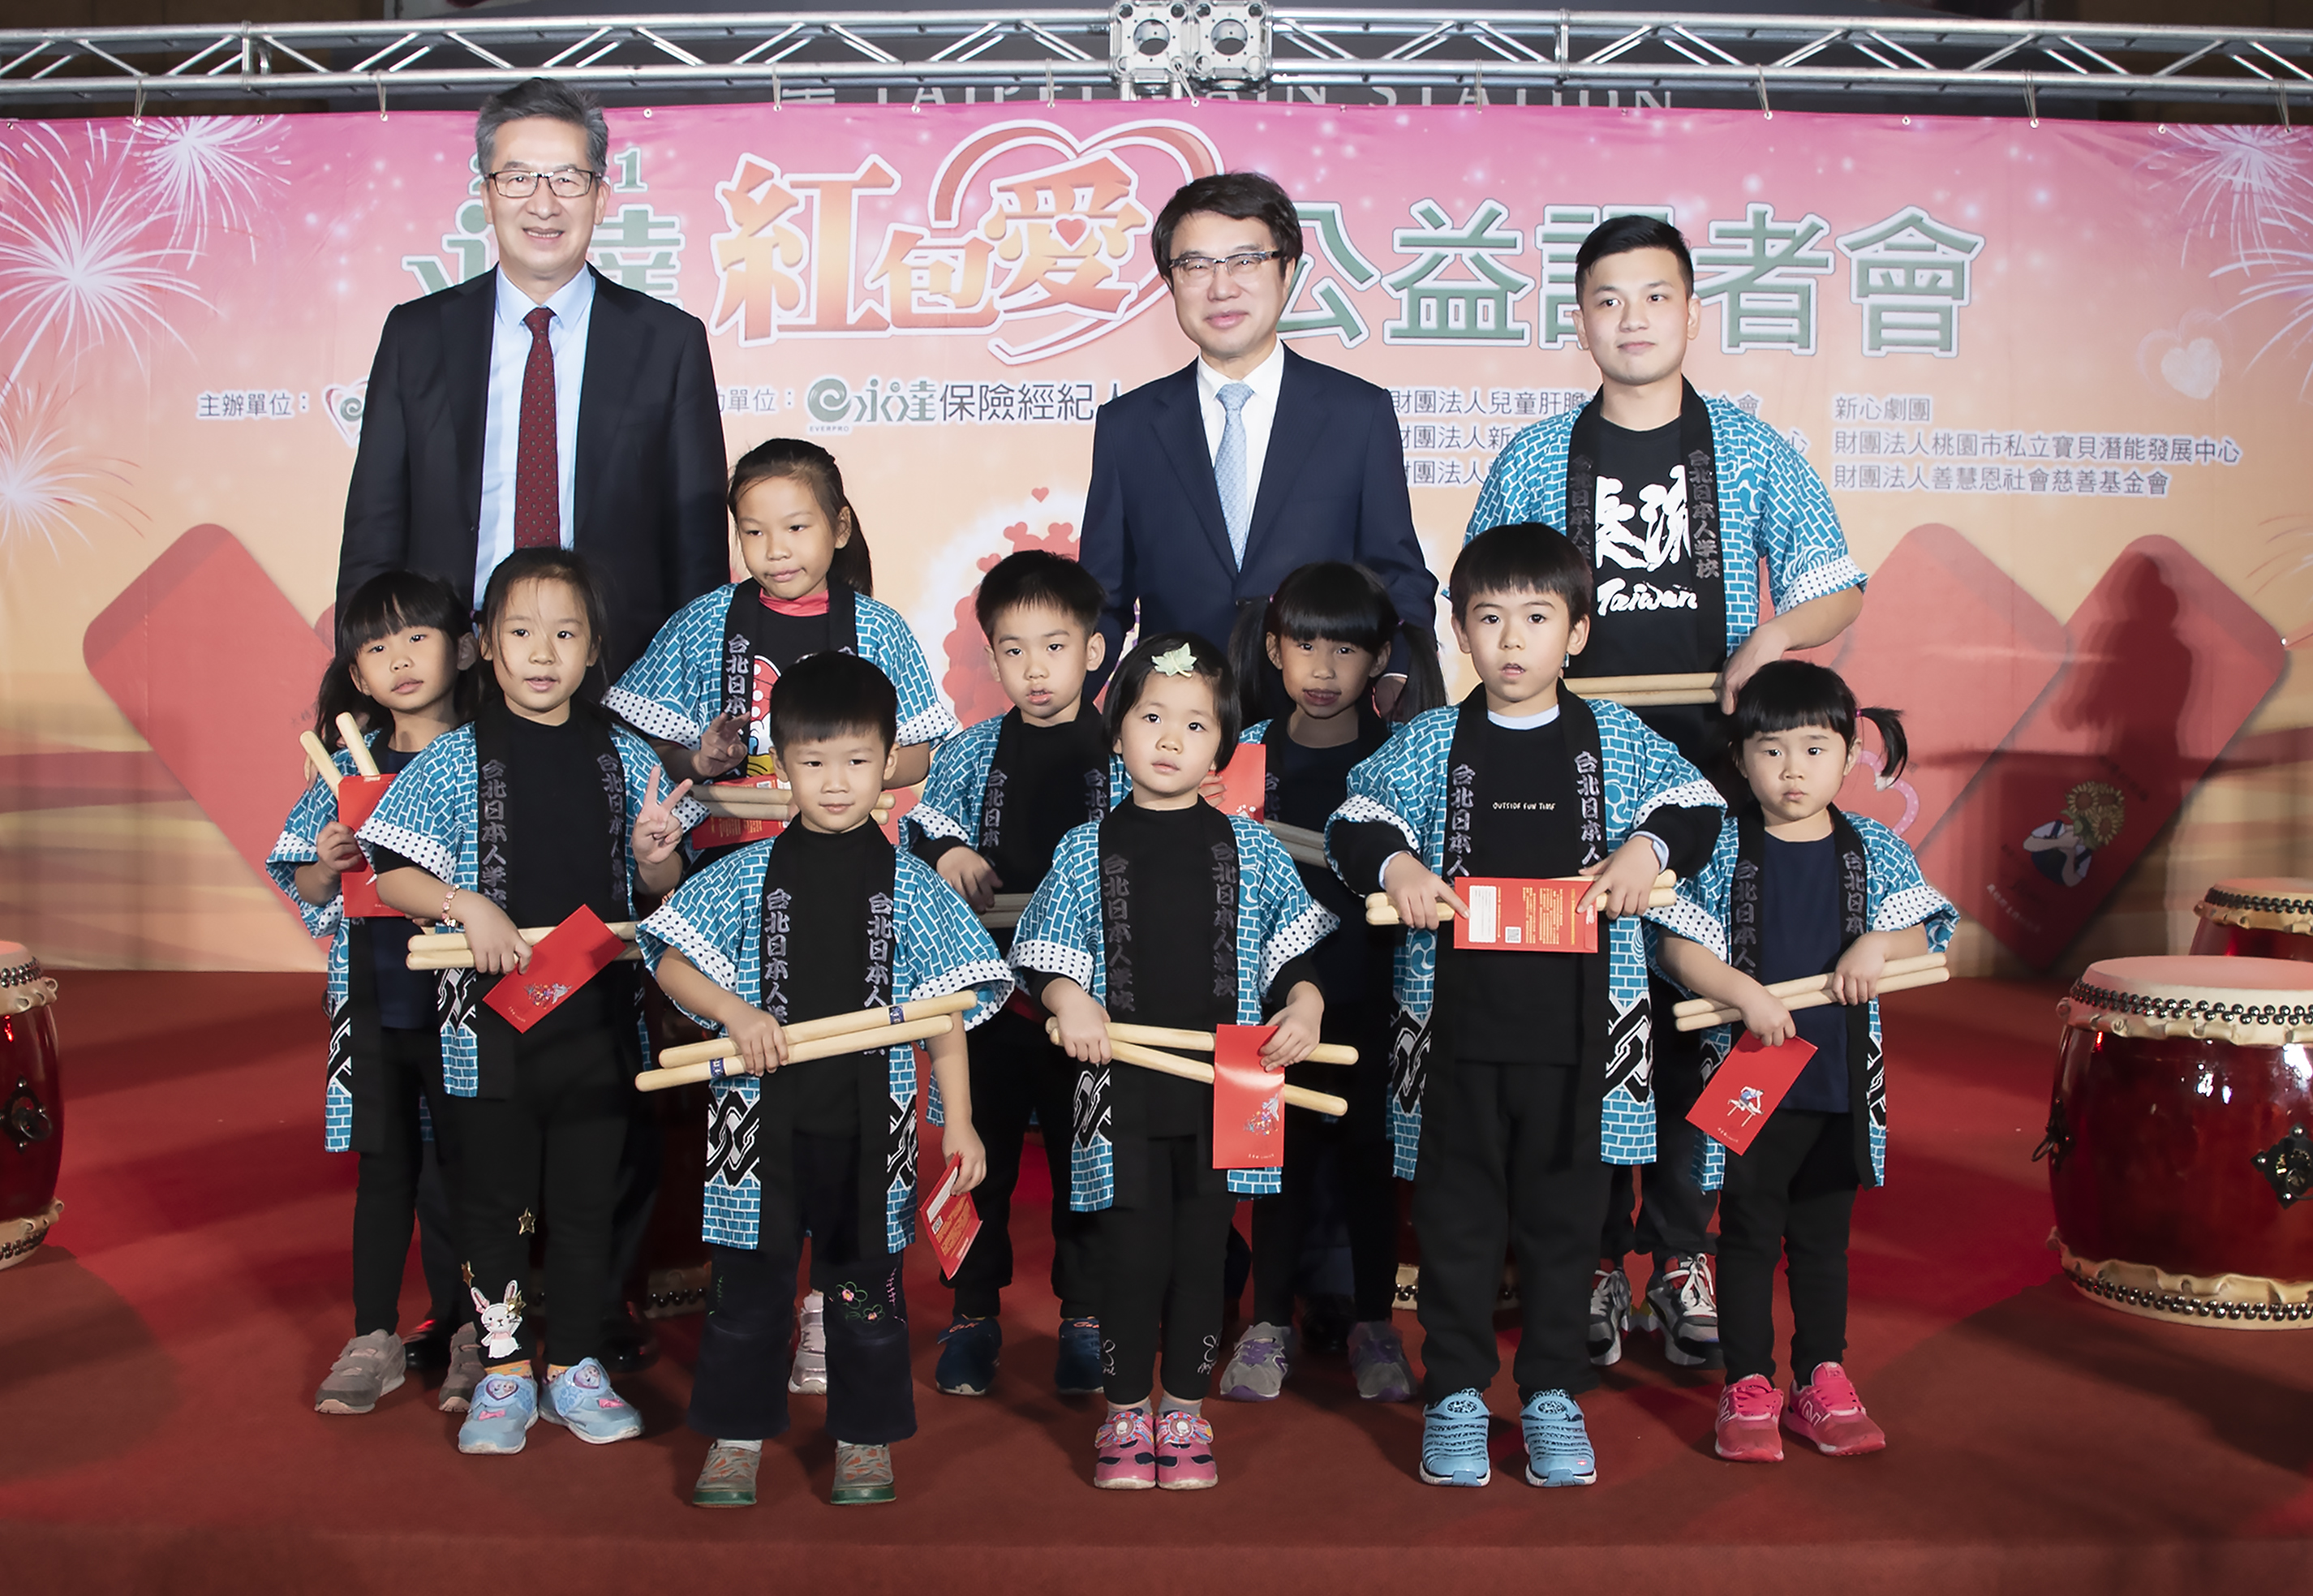 開場表演由熊谷新之助老師（圖右後）和太鼓熊組兒童班熱鬧開場。